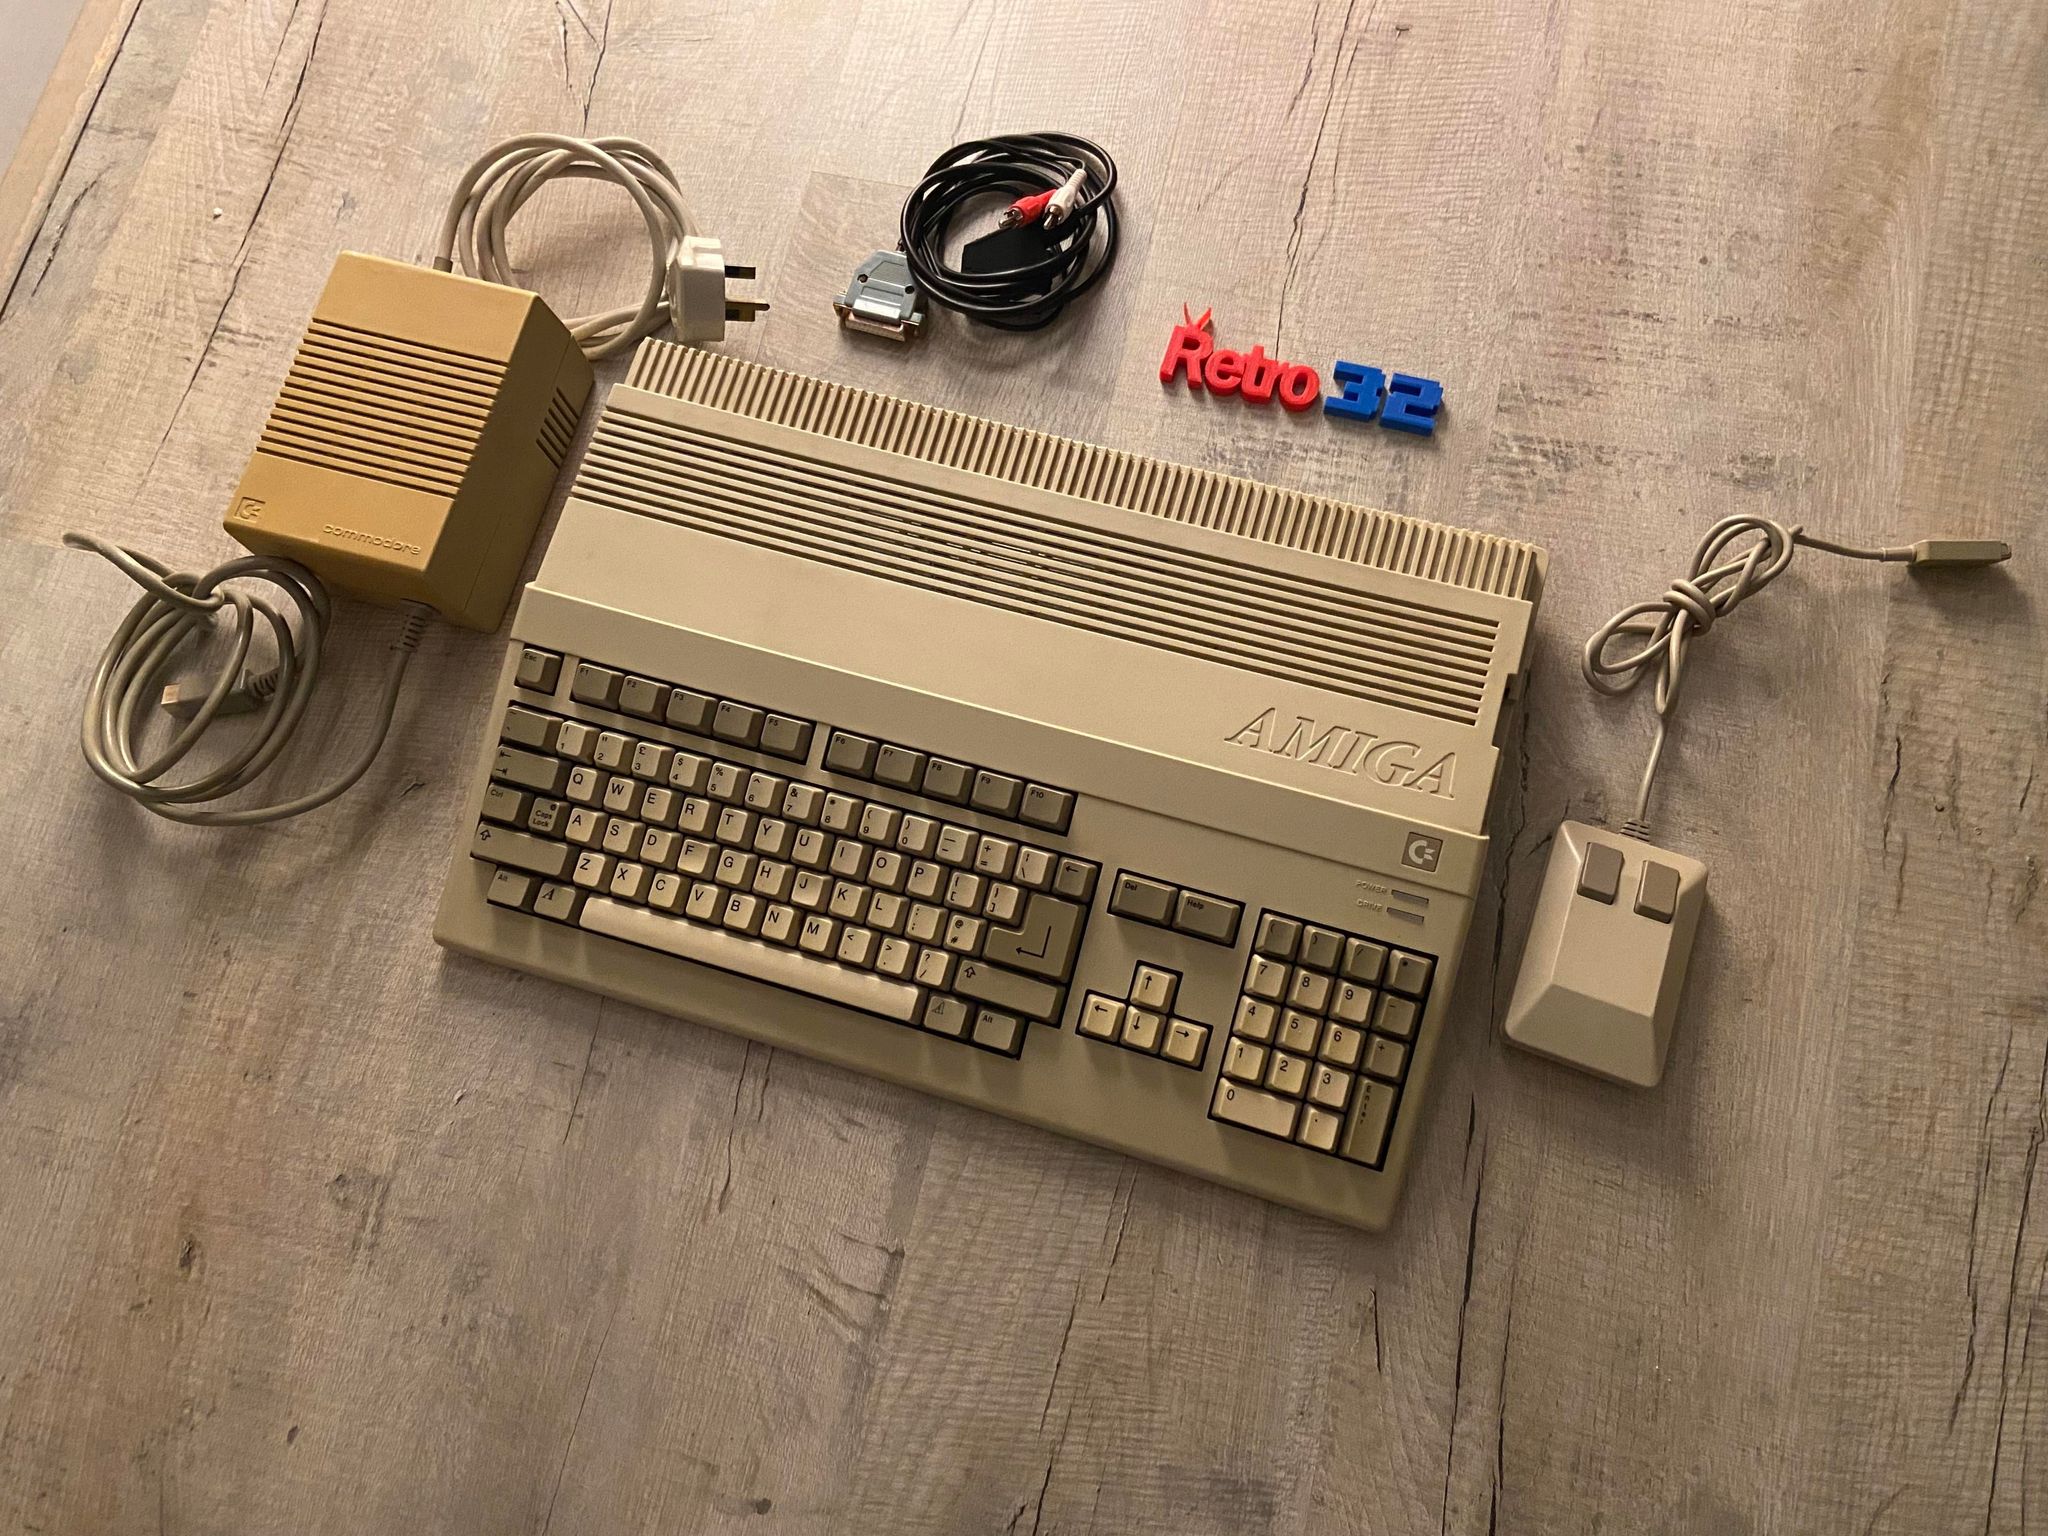 Commodore Amiga 500 boxed with accessories - Retro32